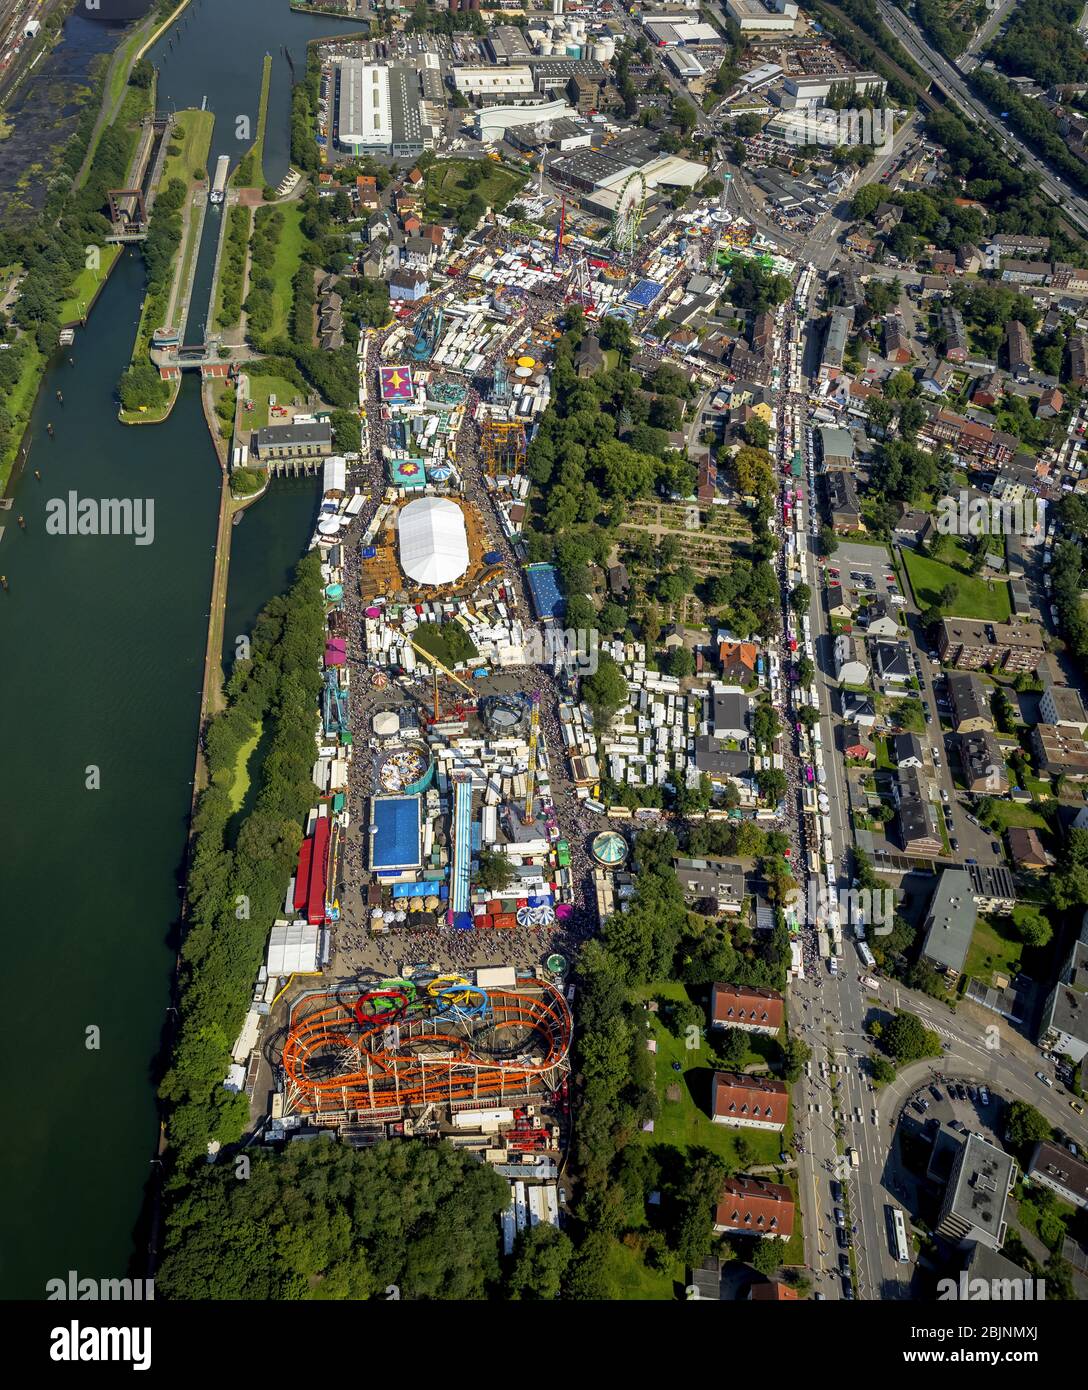 , Fair Cranger Kirmes in Herne, 06.08.2017, aerial view, Germany, North Rhine-Westphalia, Ruhr Area, Herne Stock Photo